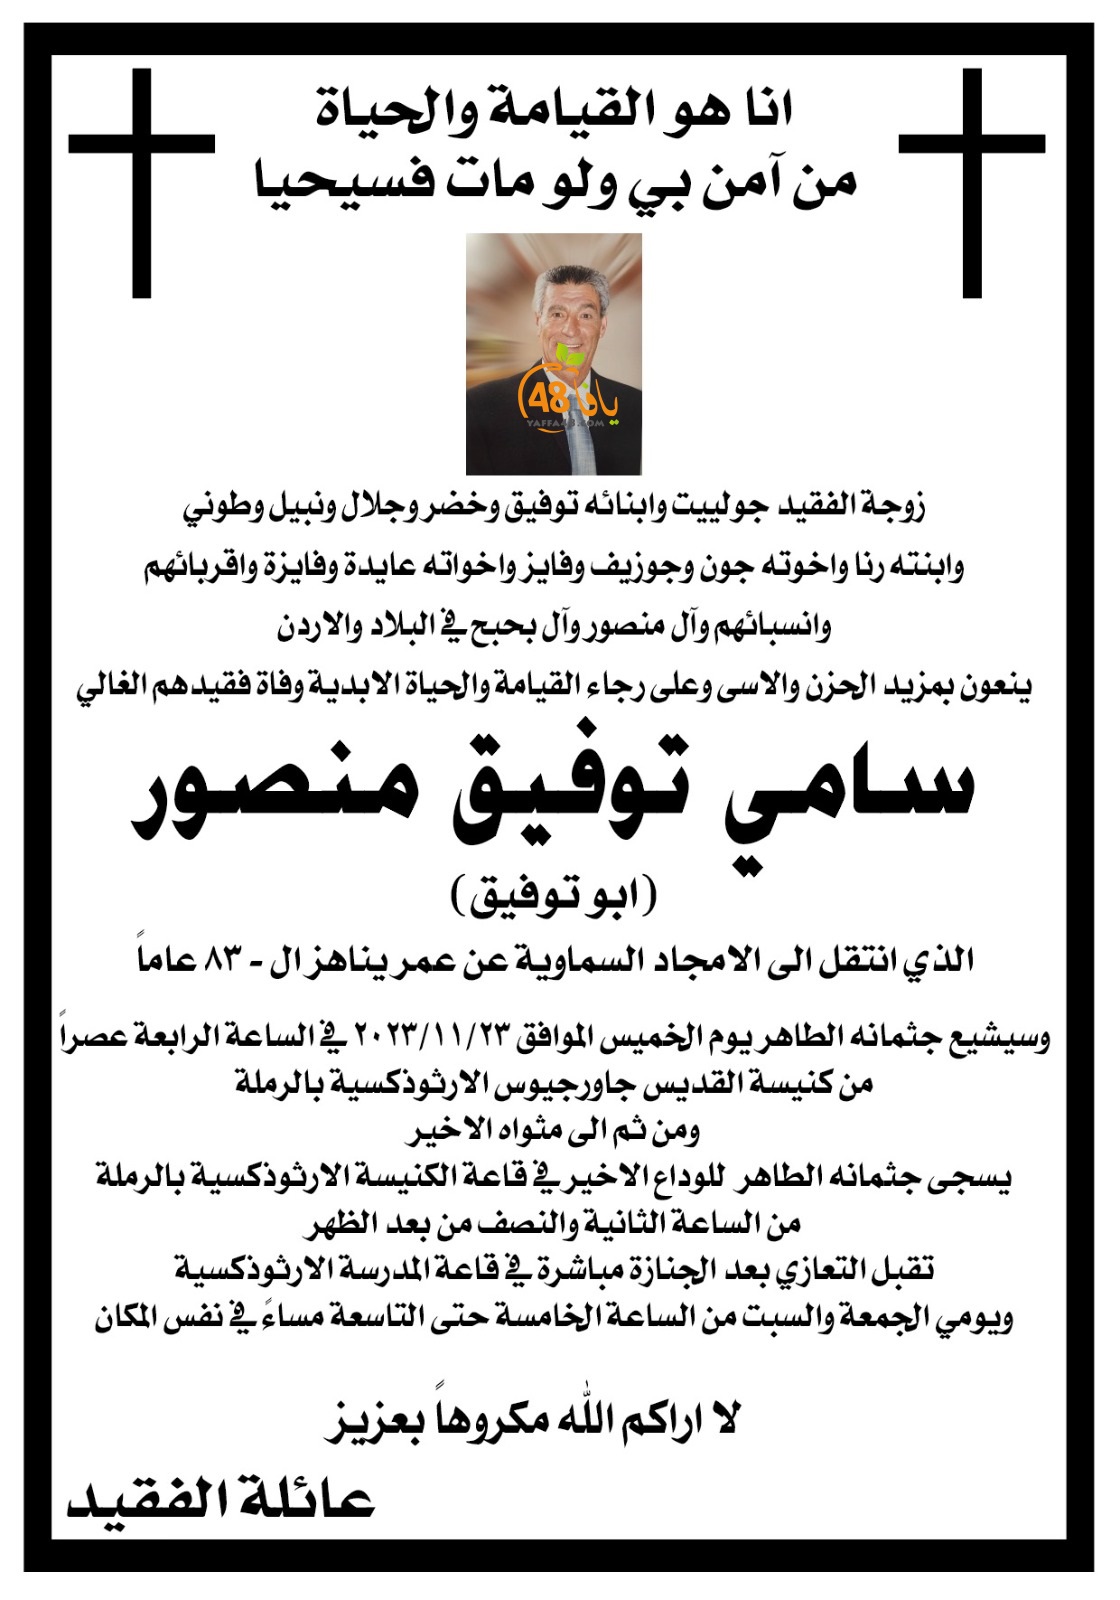 الرملة: وفاة السيد سامي توفيق منصور (أبو توفيق) 83 عاما